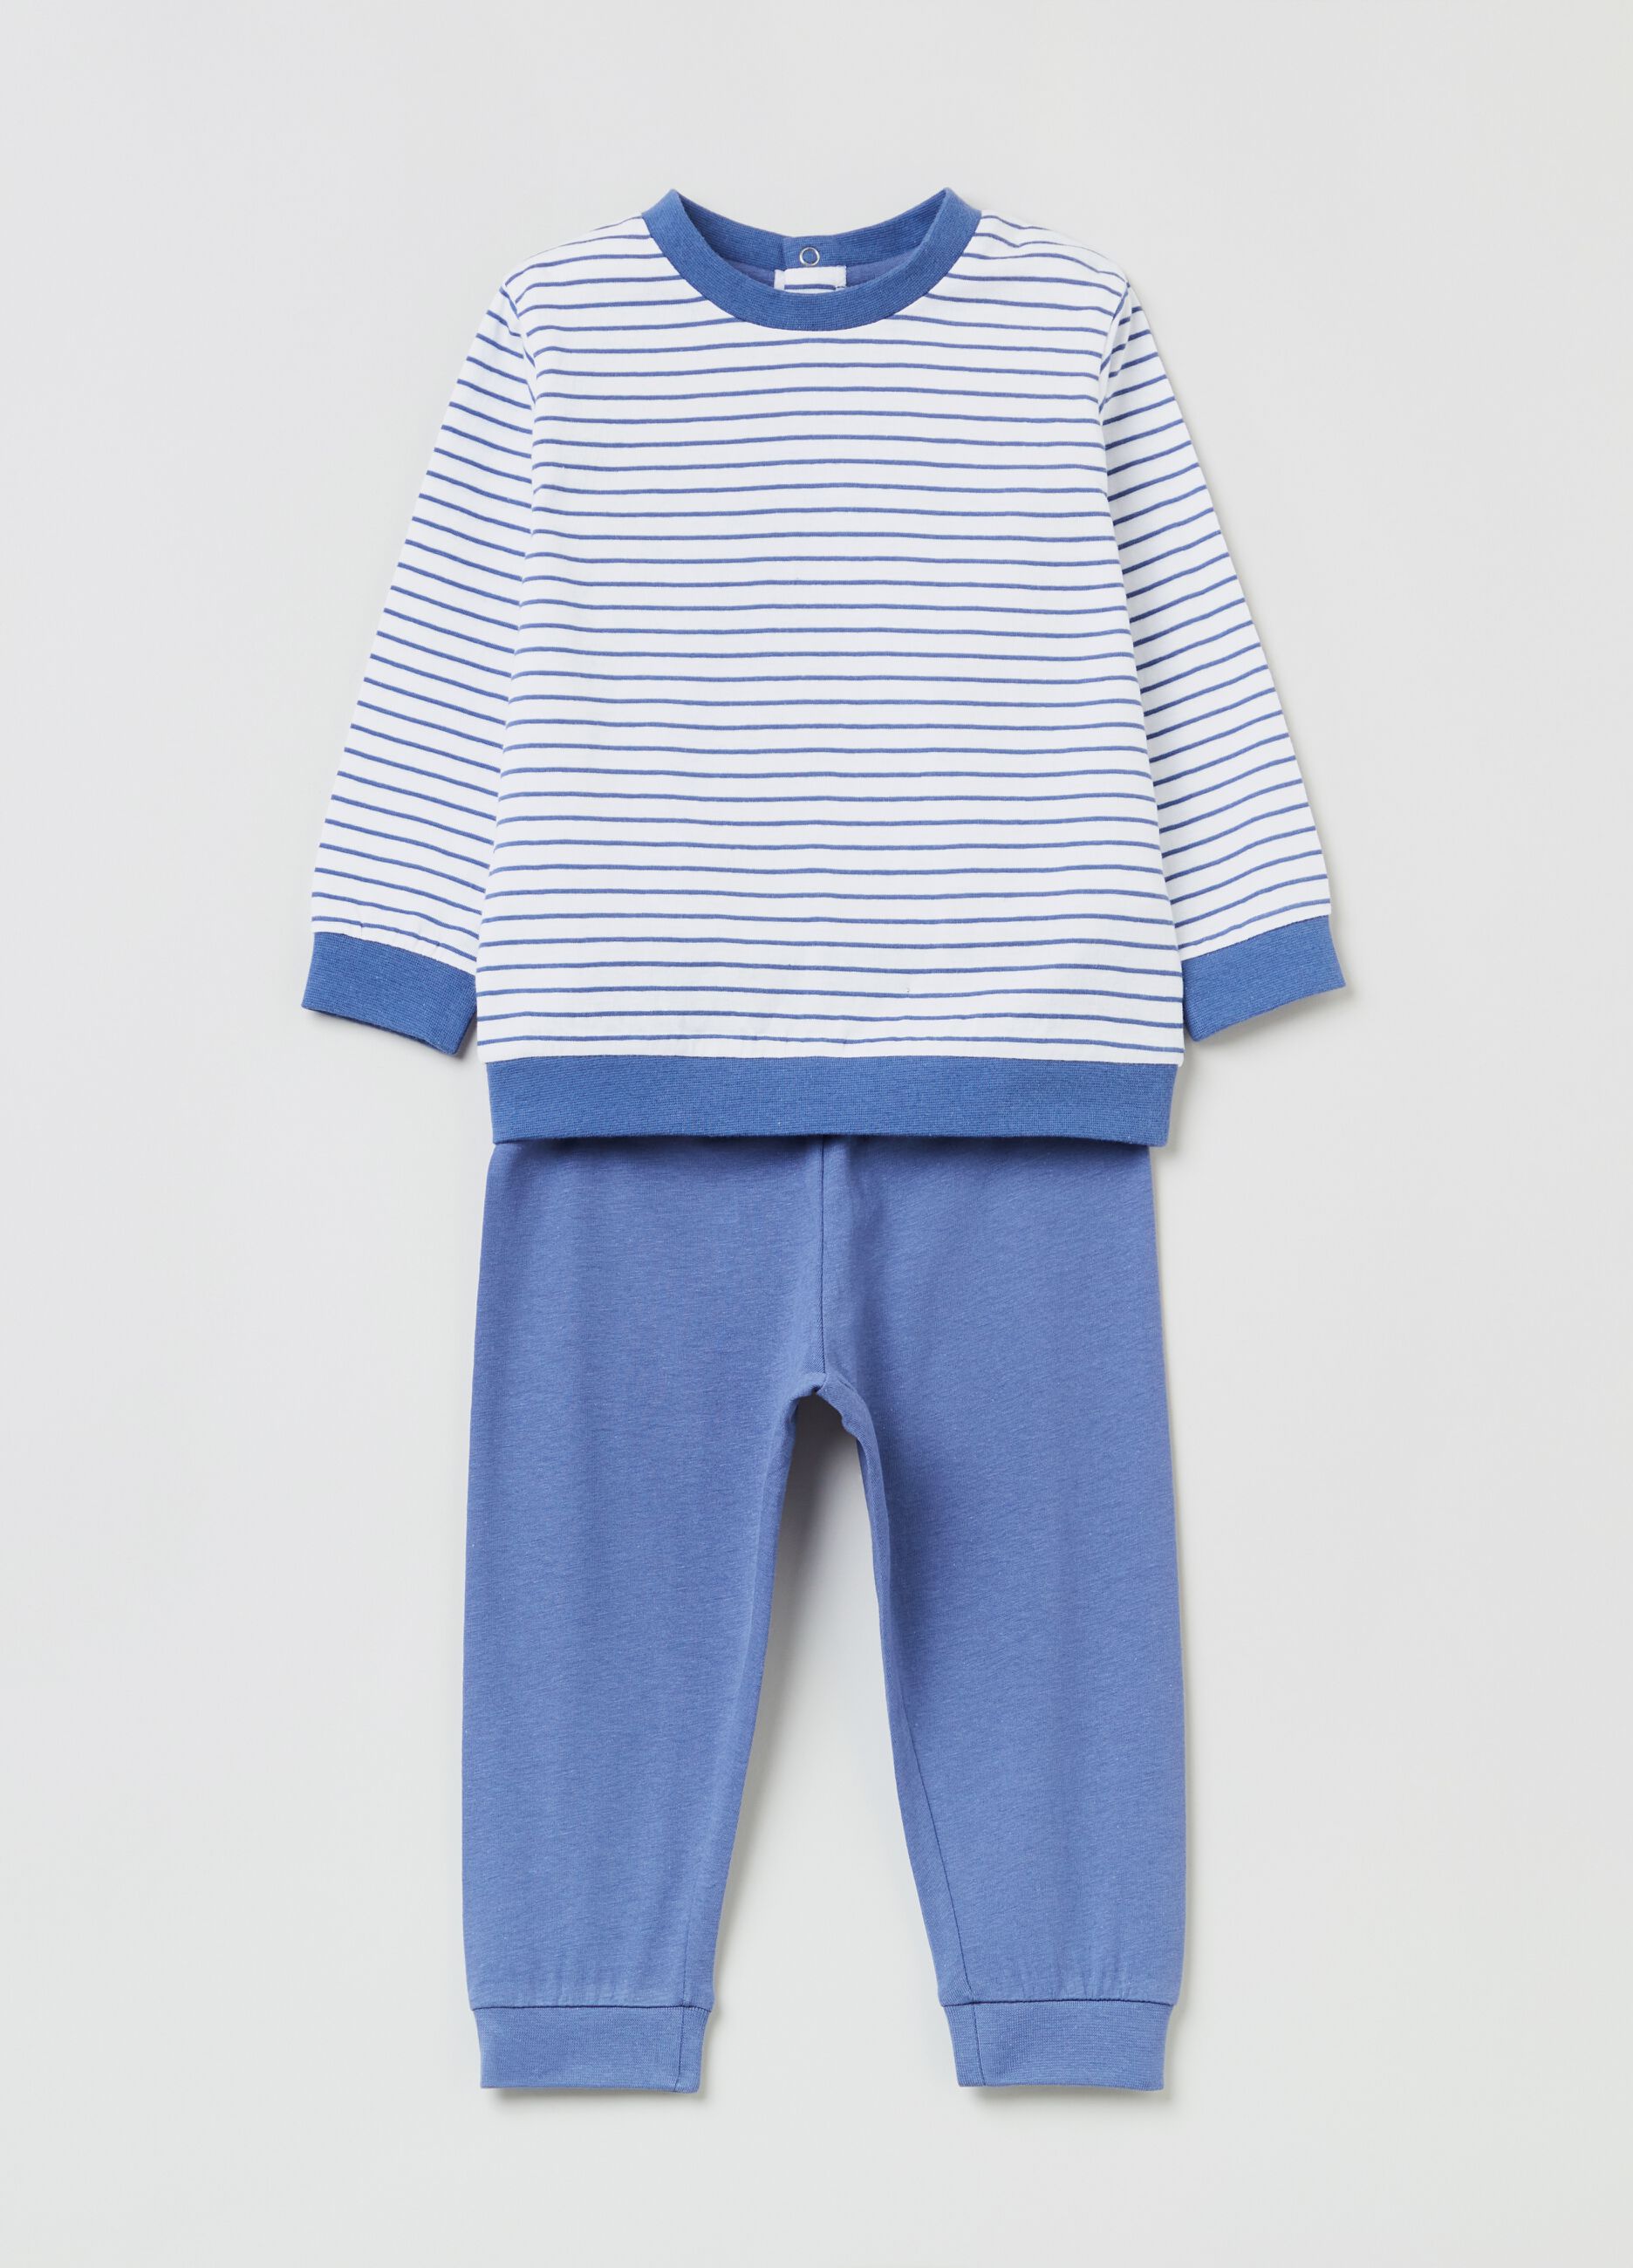 Cotton pyjamas with striped top